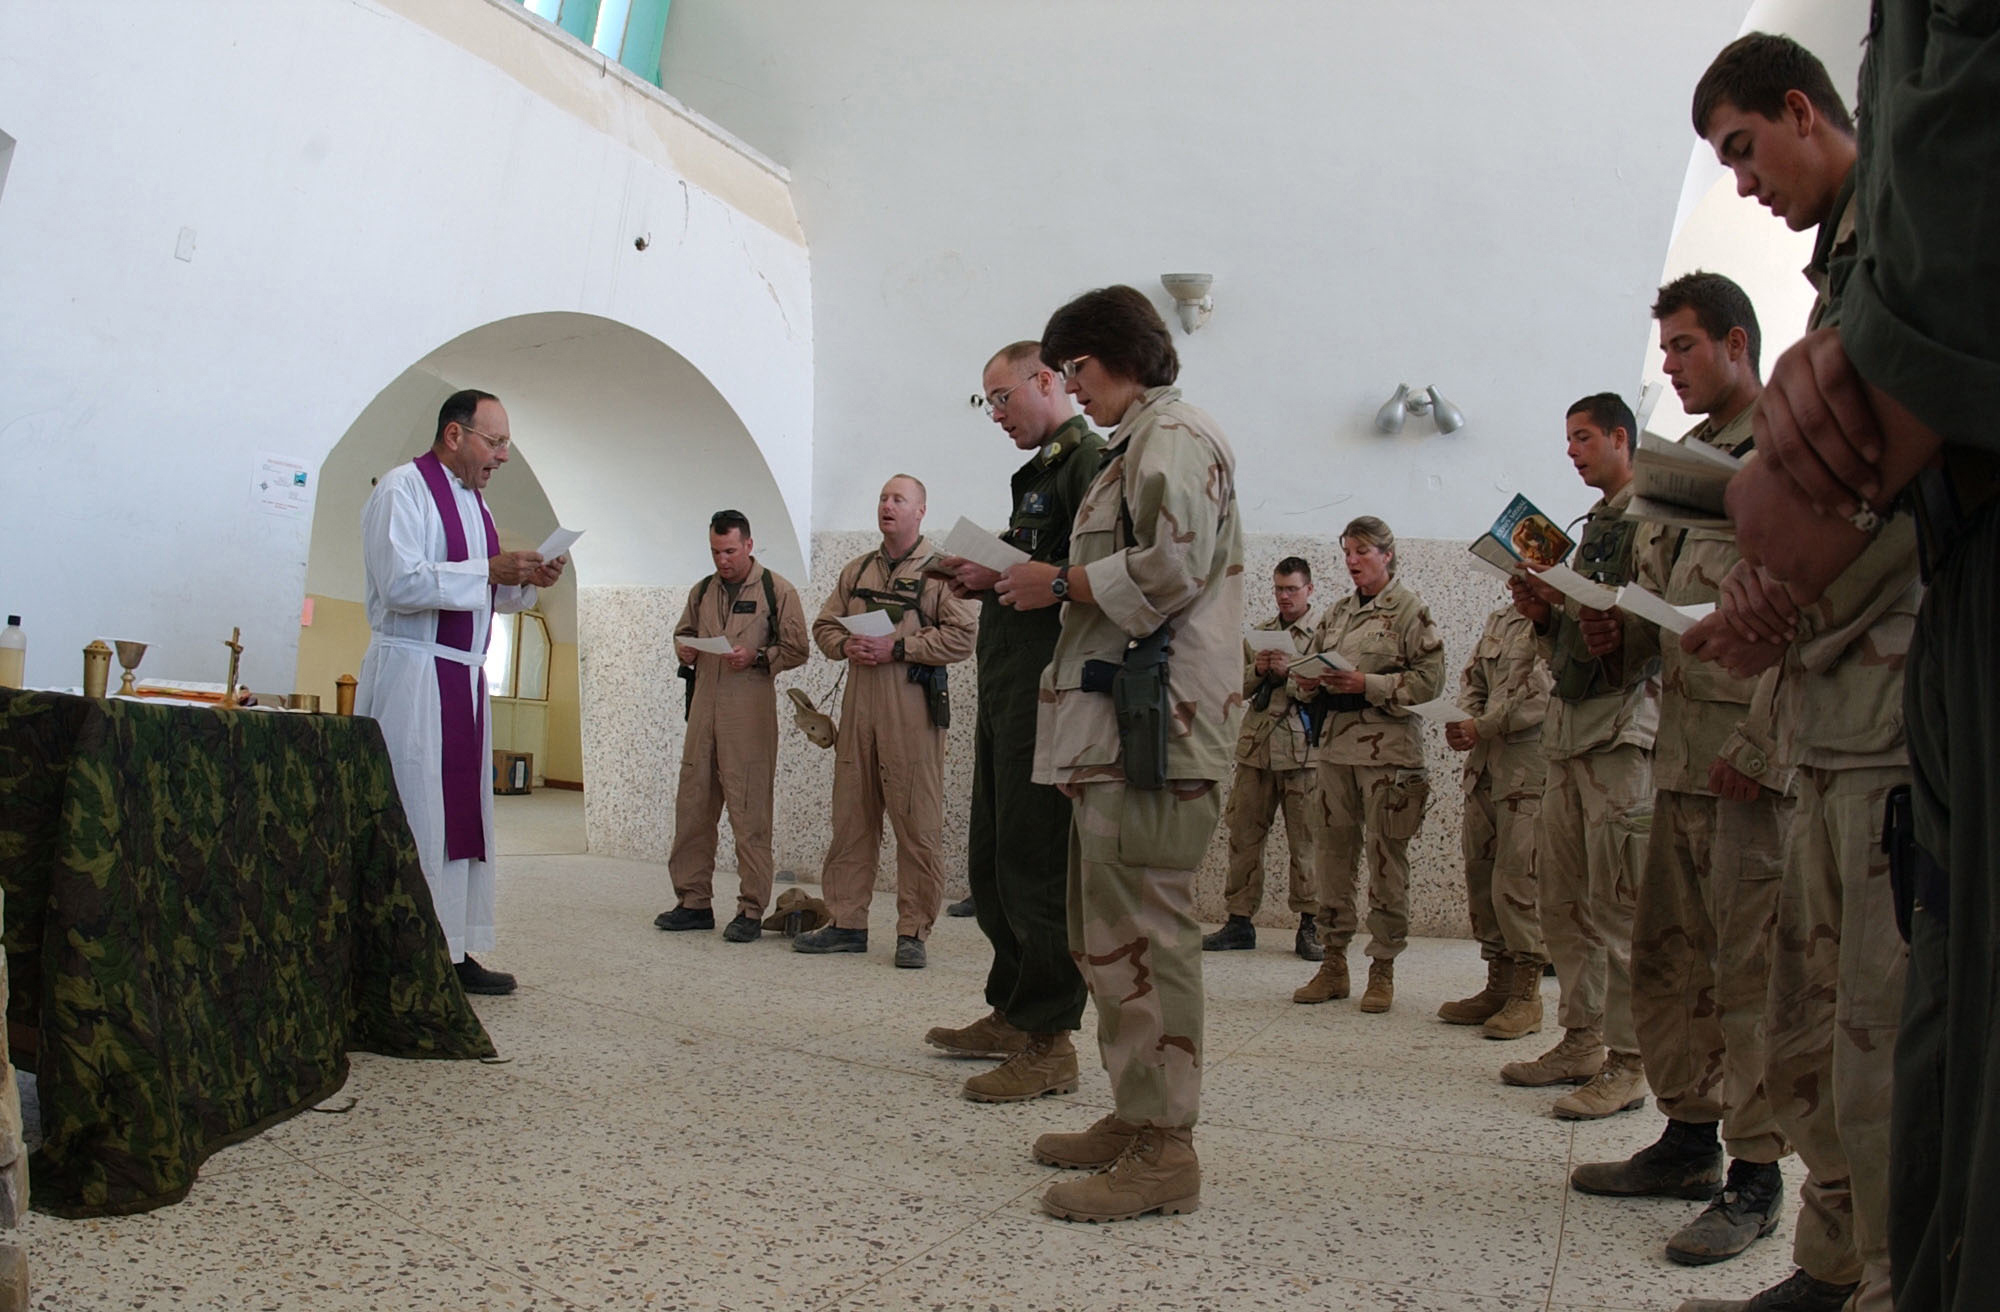 Вывод войск США создает новые проблемы для христиан Афганистана